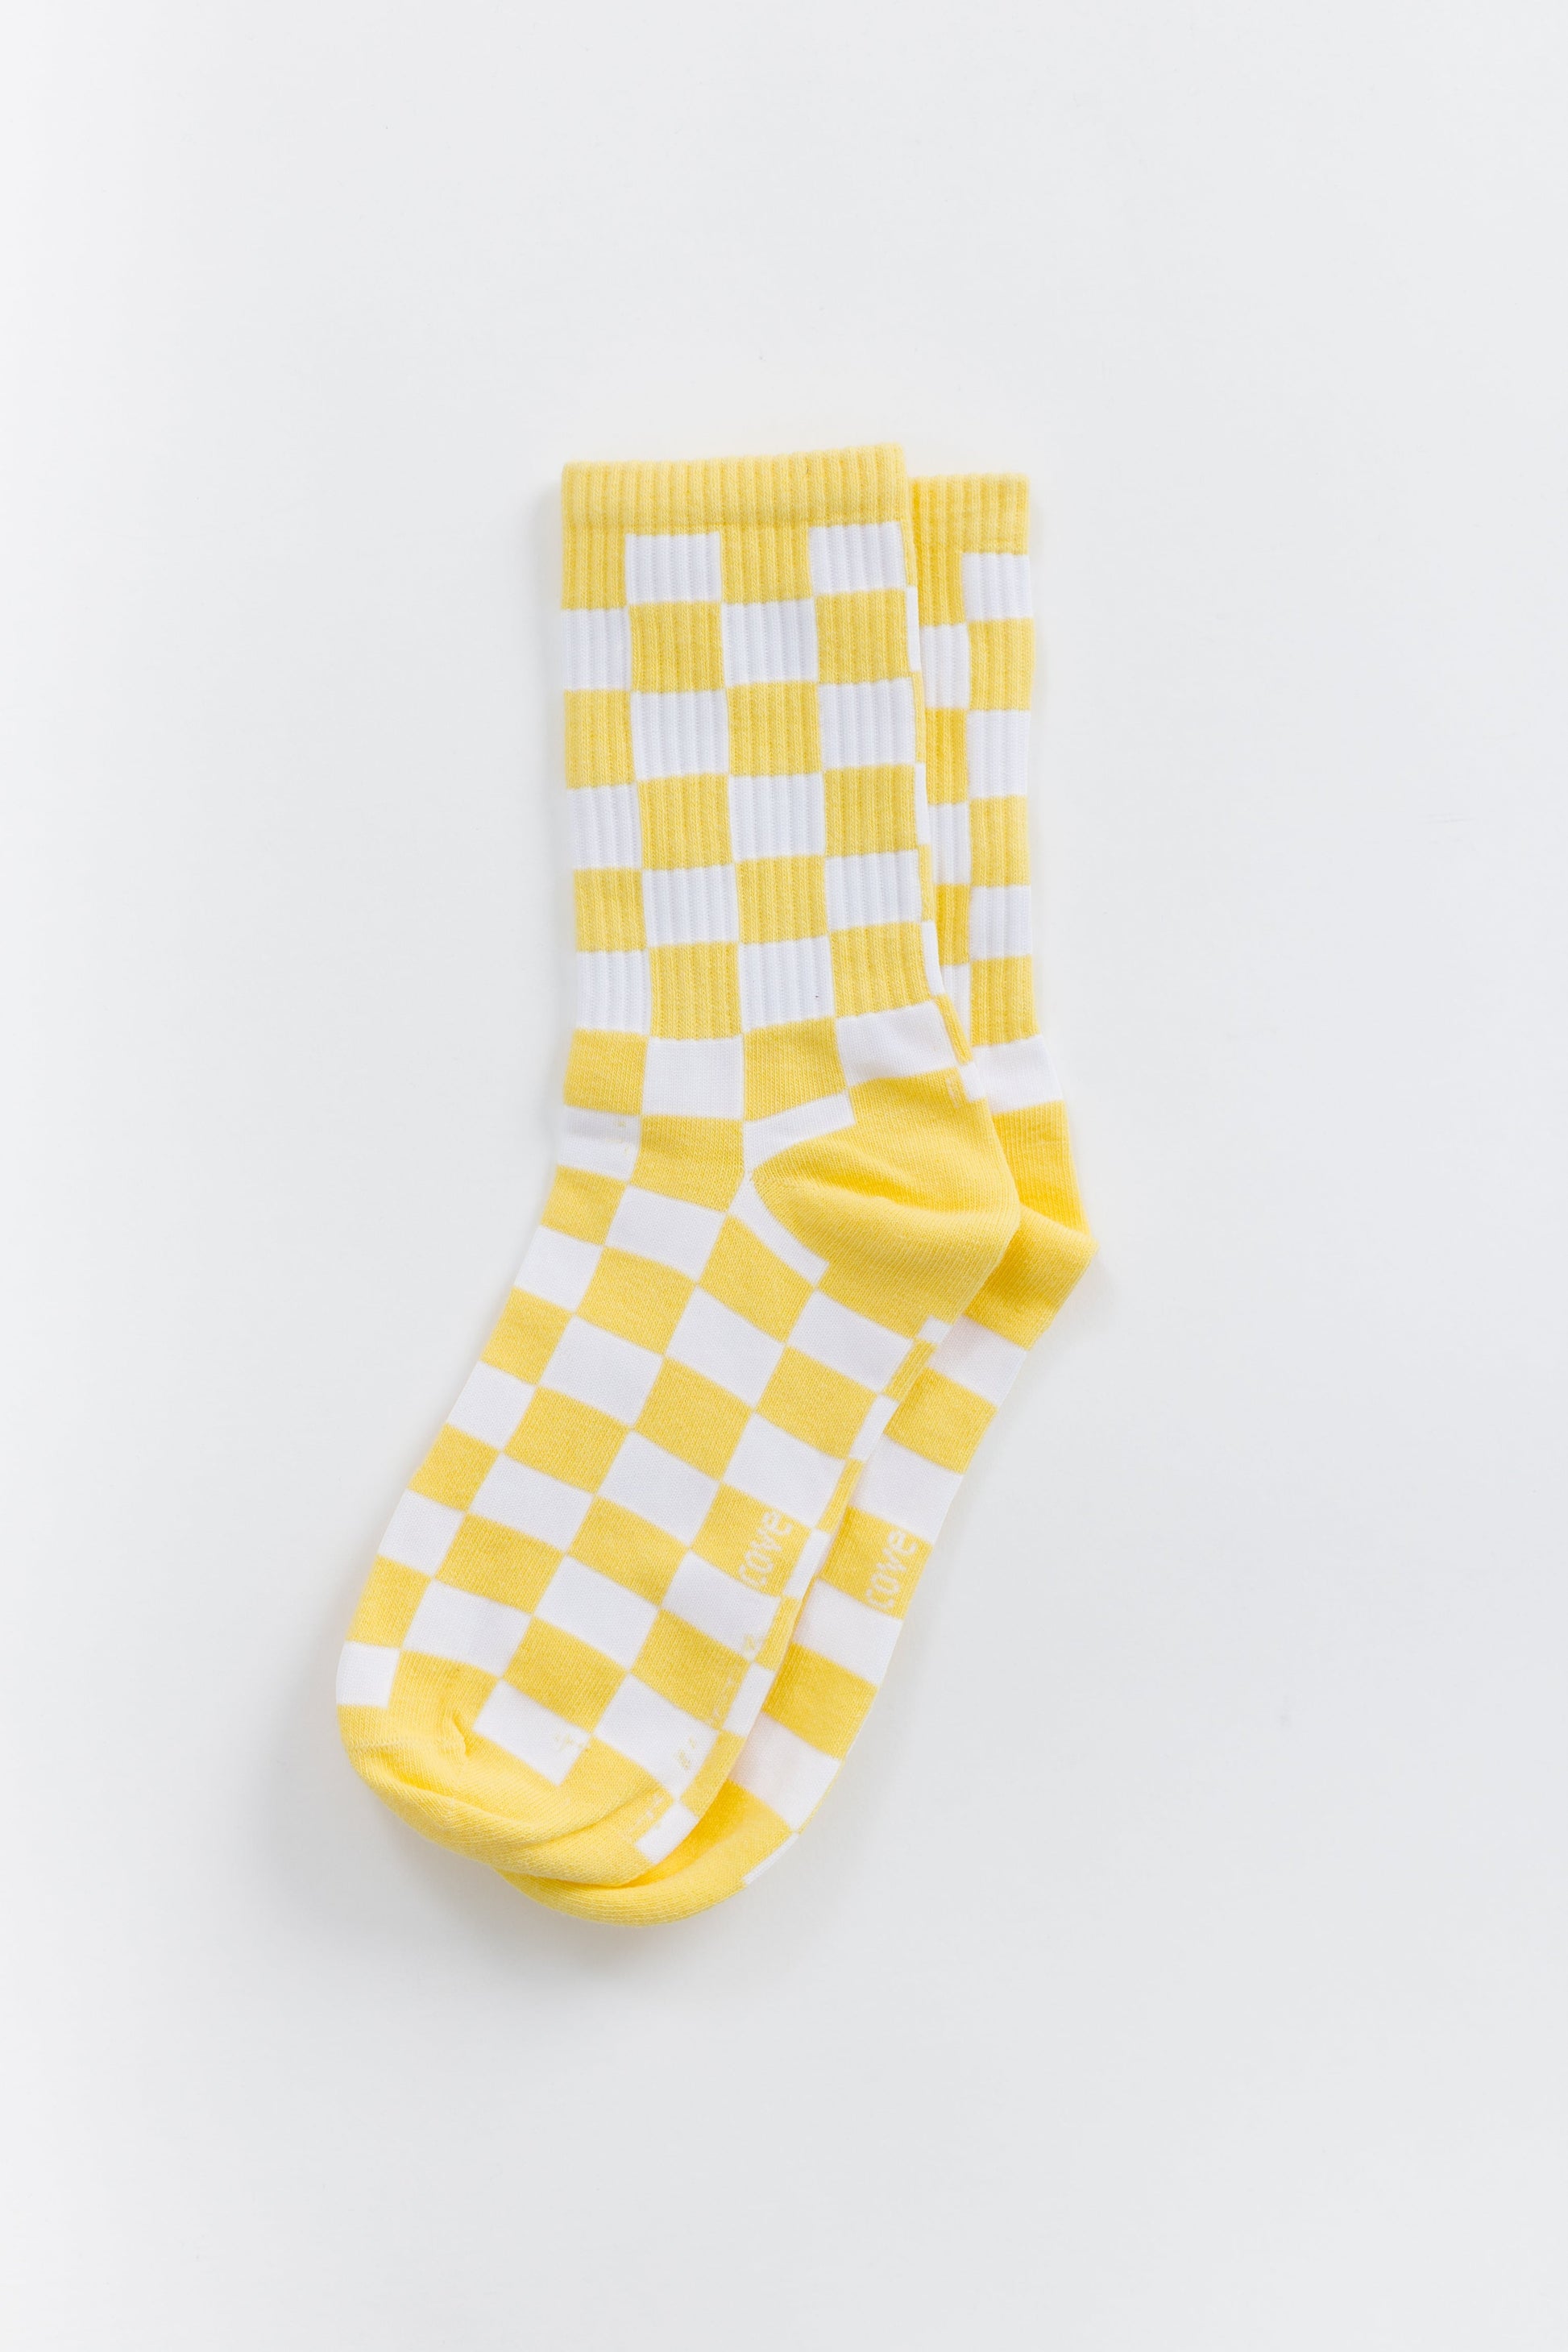 Cove Checker Retro Socks WOMEN'S SOCKS Cove Accessories Yellow/White OS 